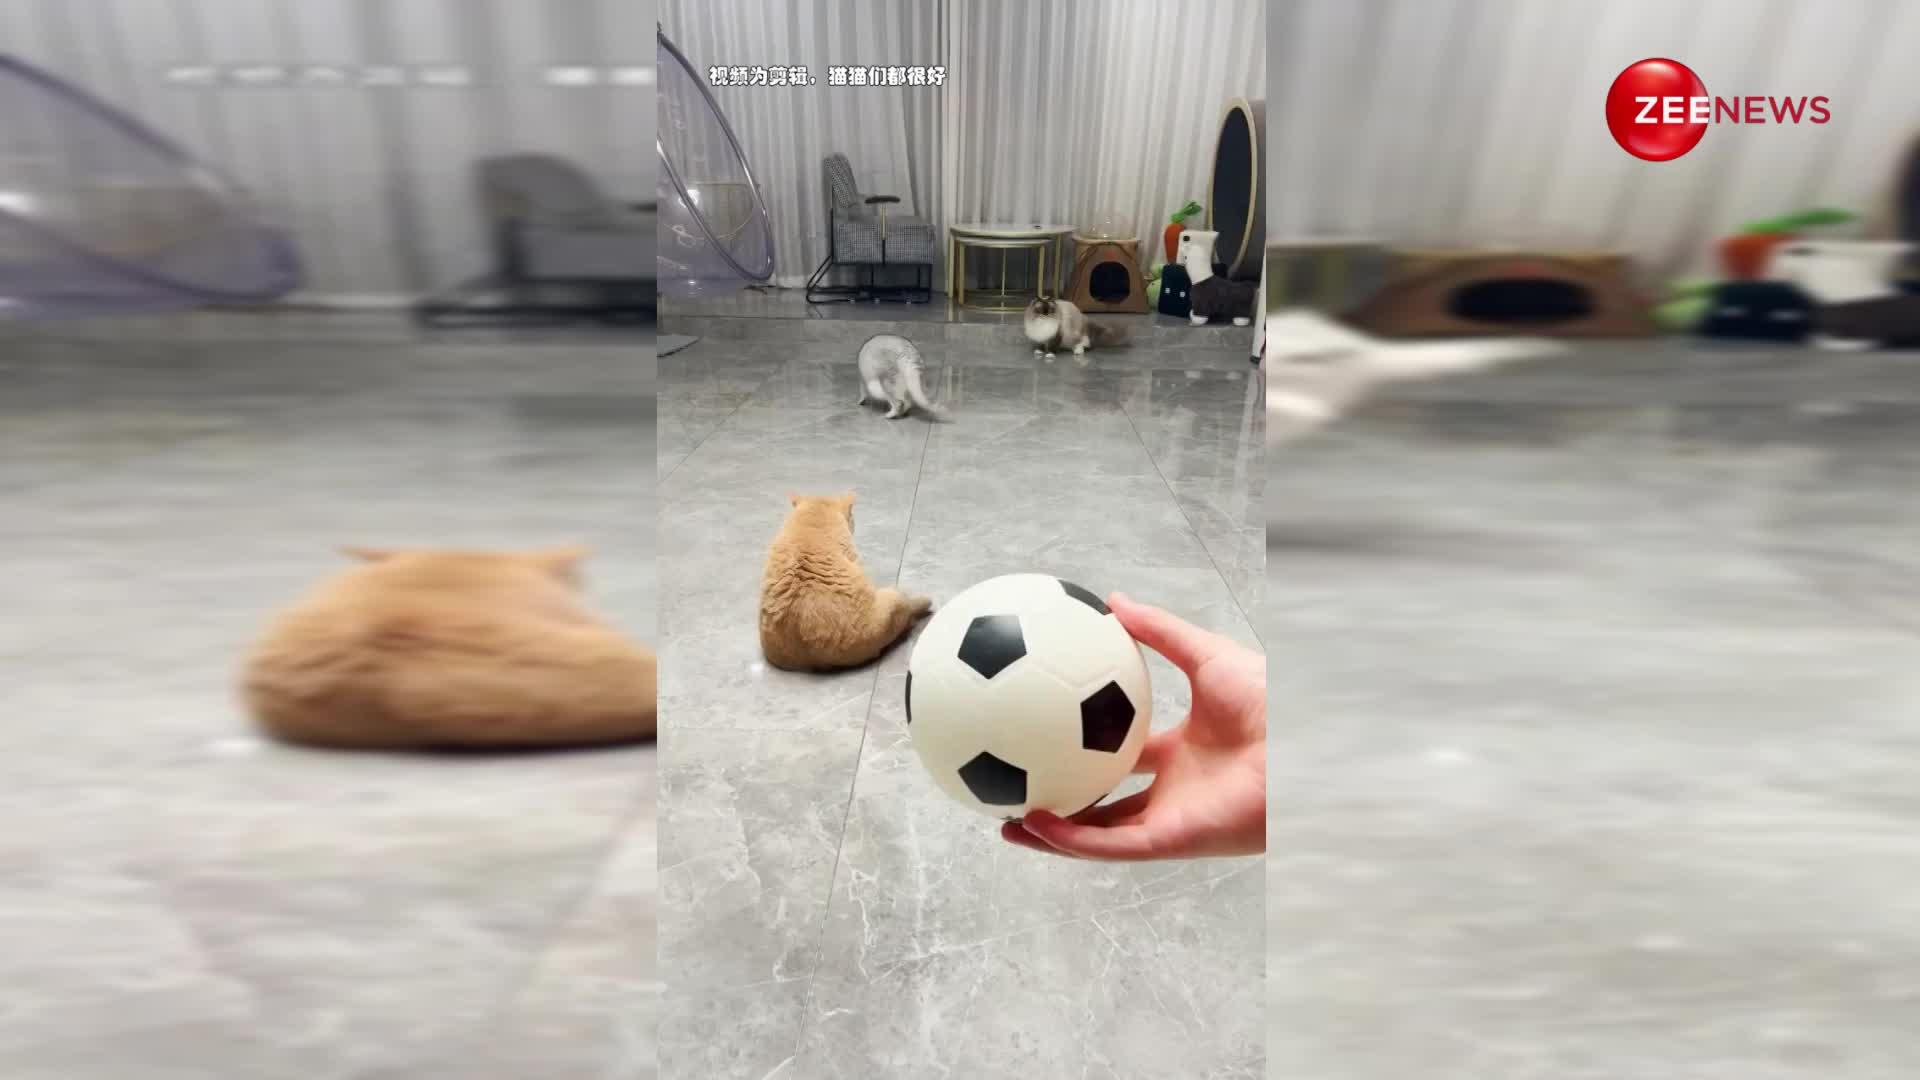 कुछ इस तरह बिल्लियों ने खेला फुटबॉल किया शानदार गोल, देखिए यह वायरल वीडियो